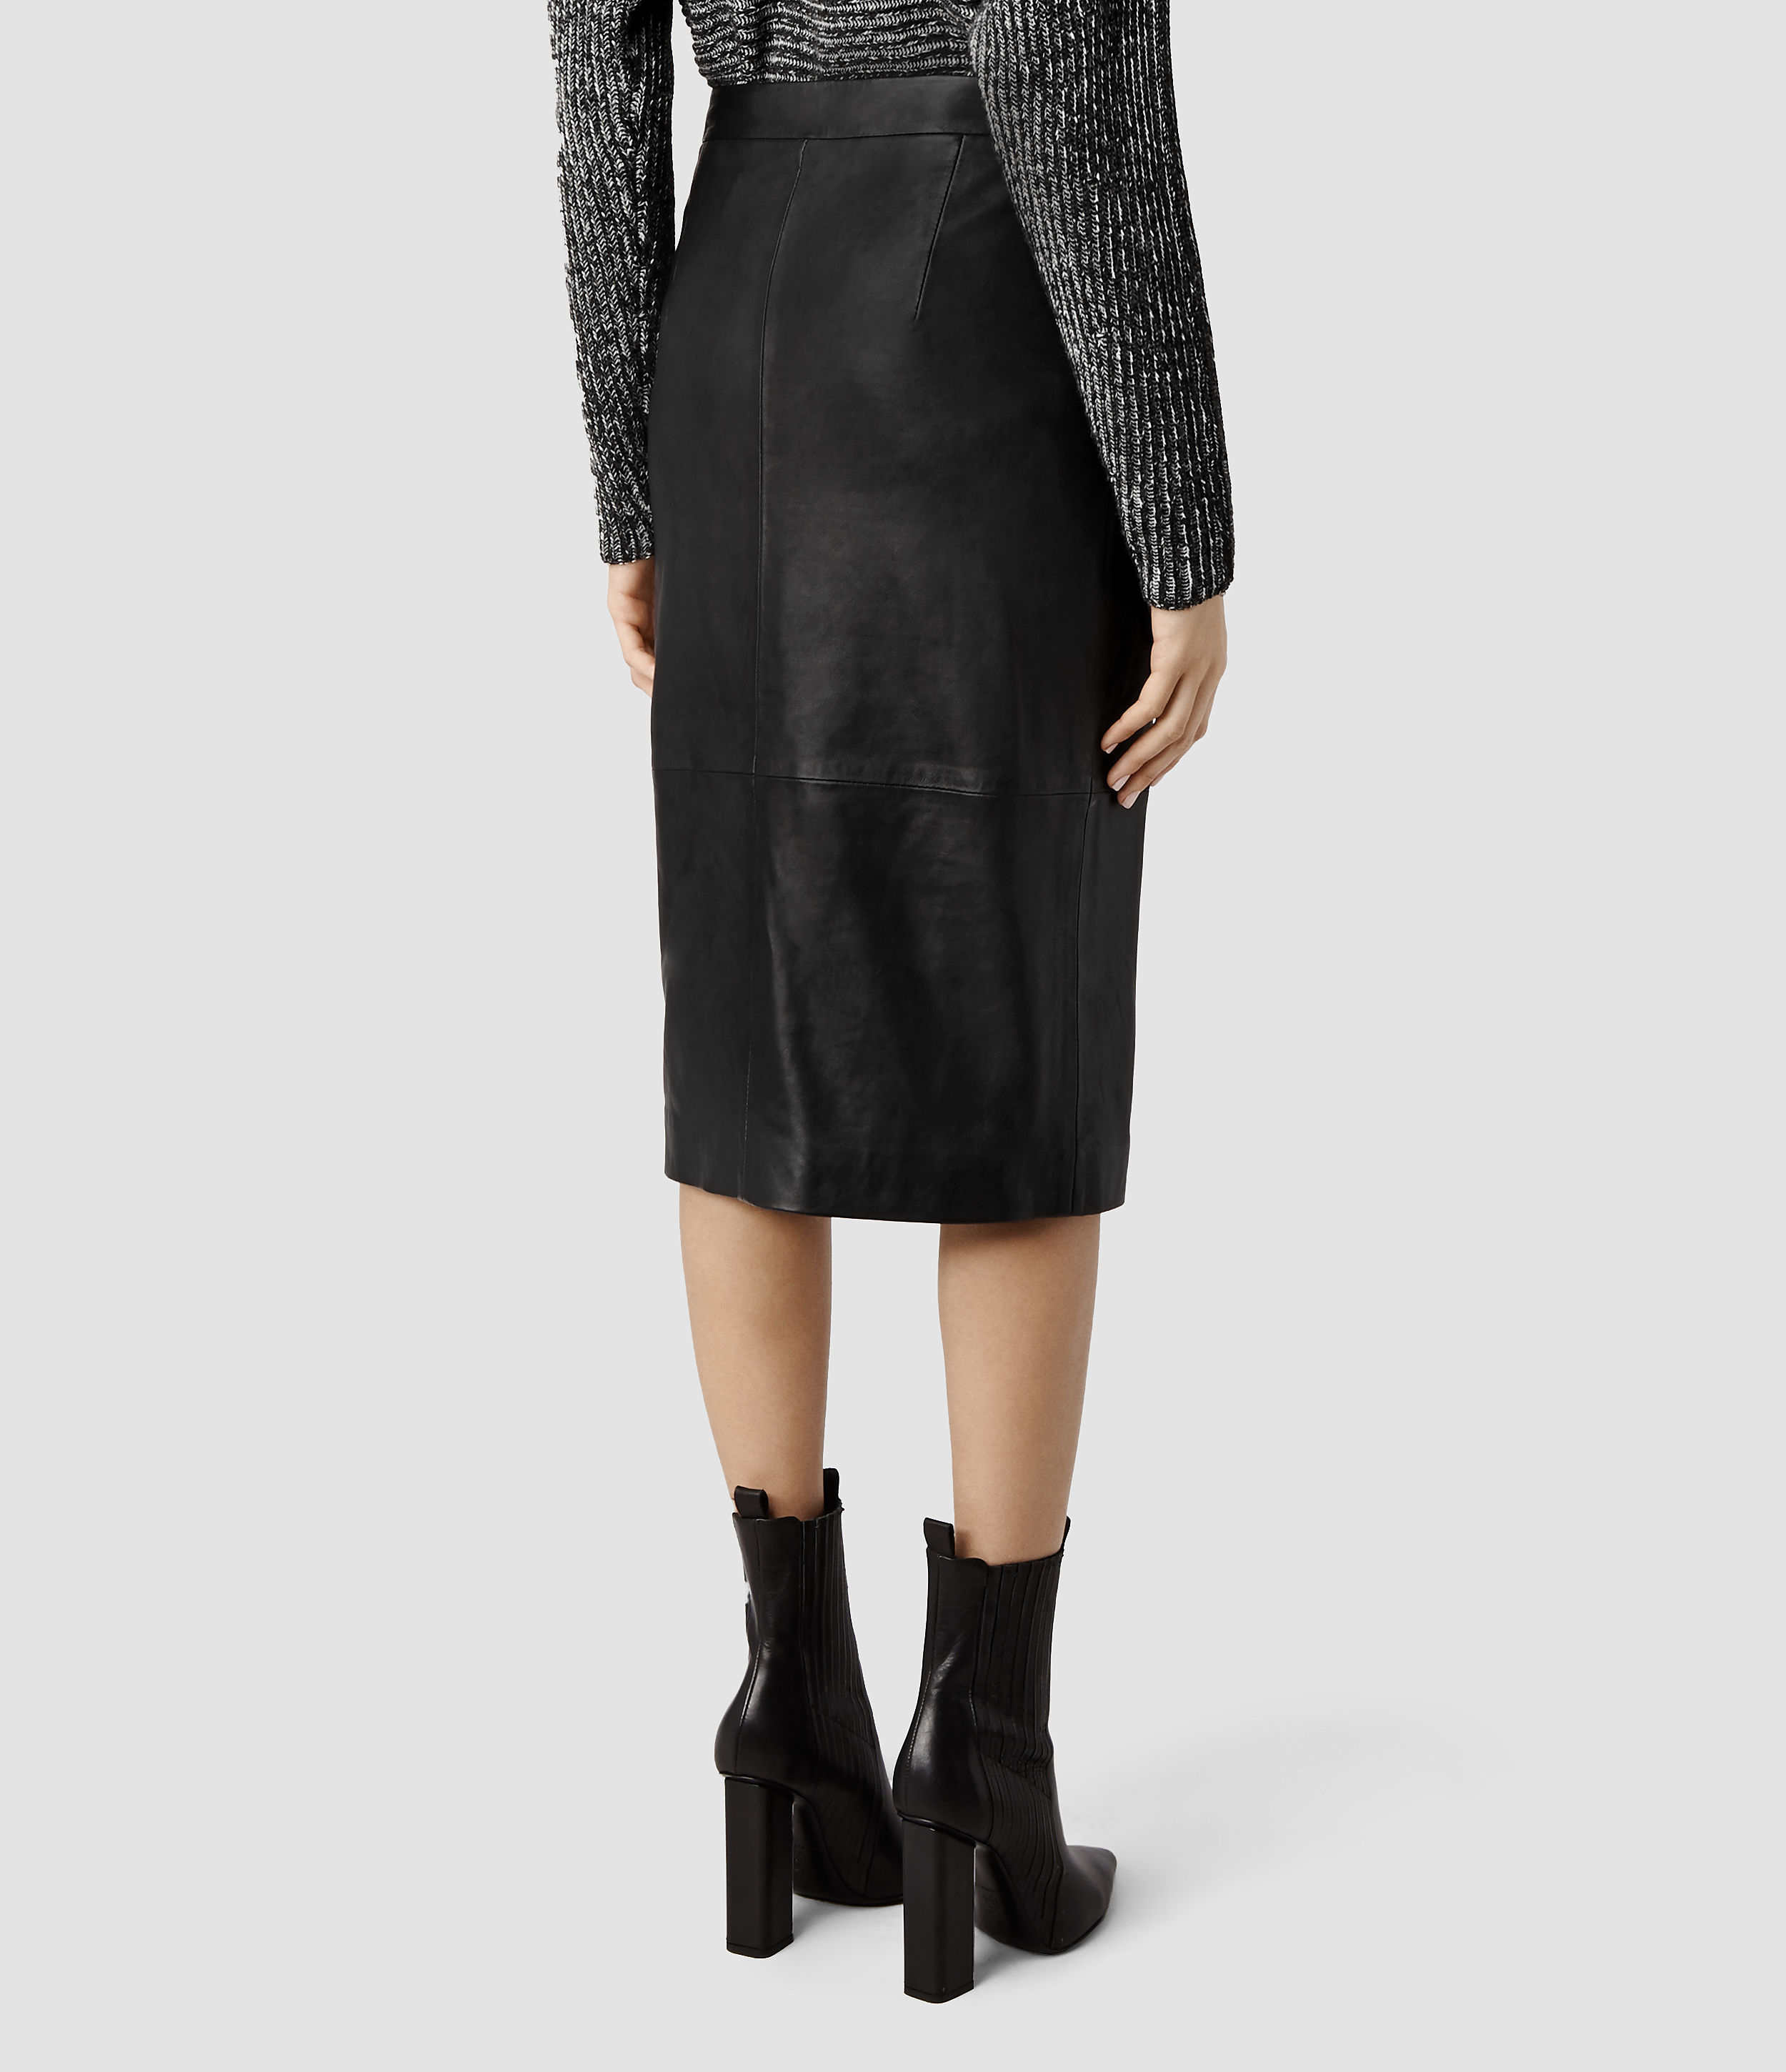 AllSaints Levitt Leather Skirt in Black - Lyst